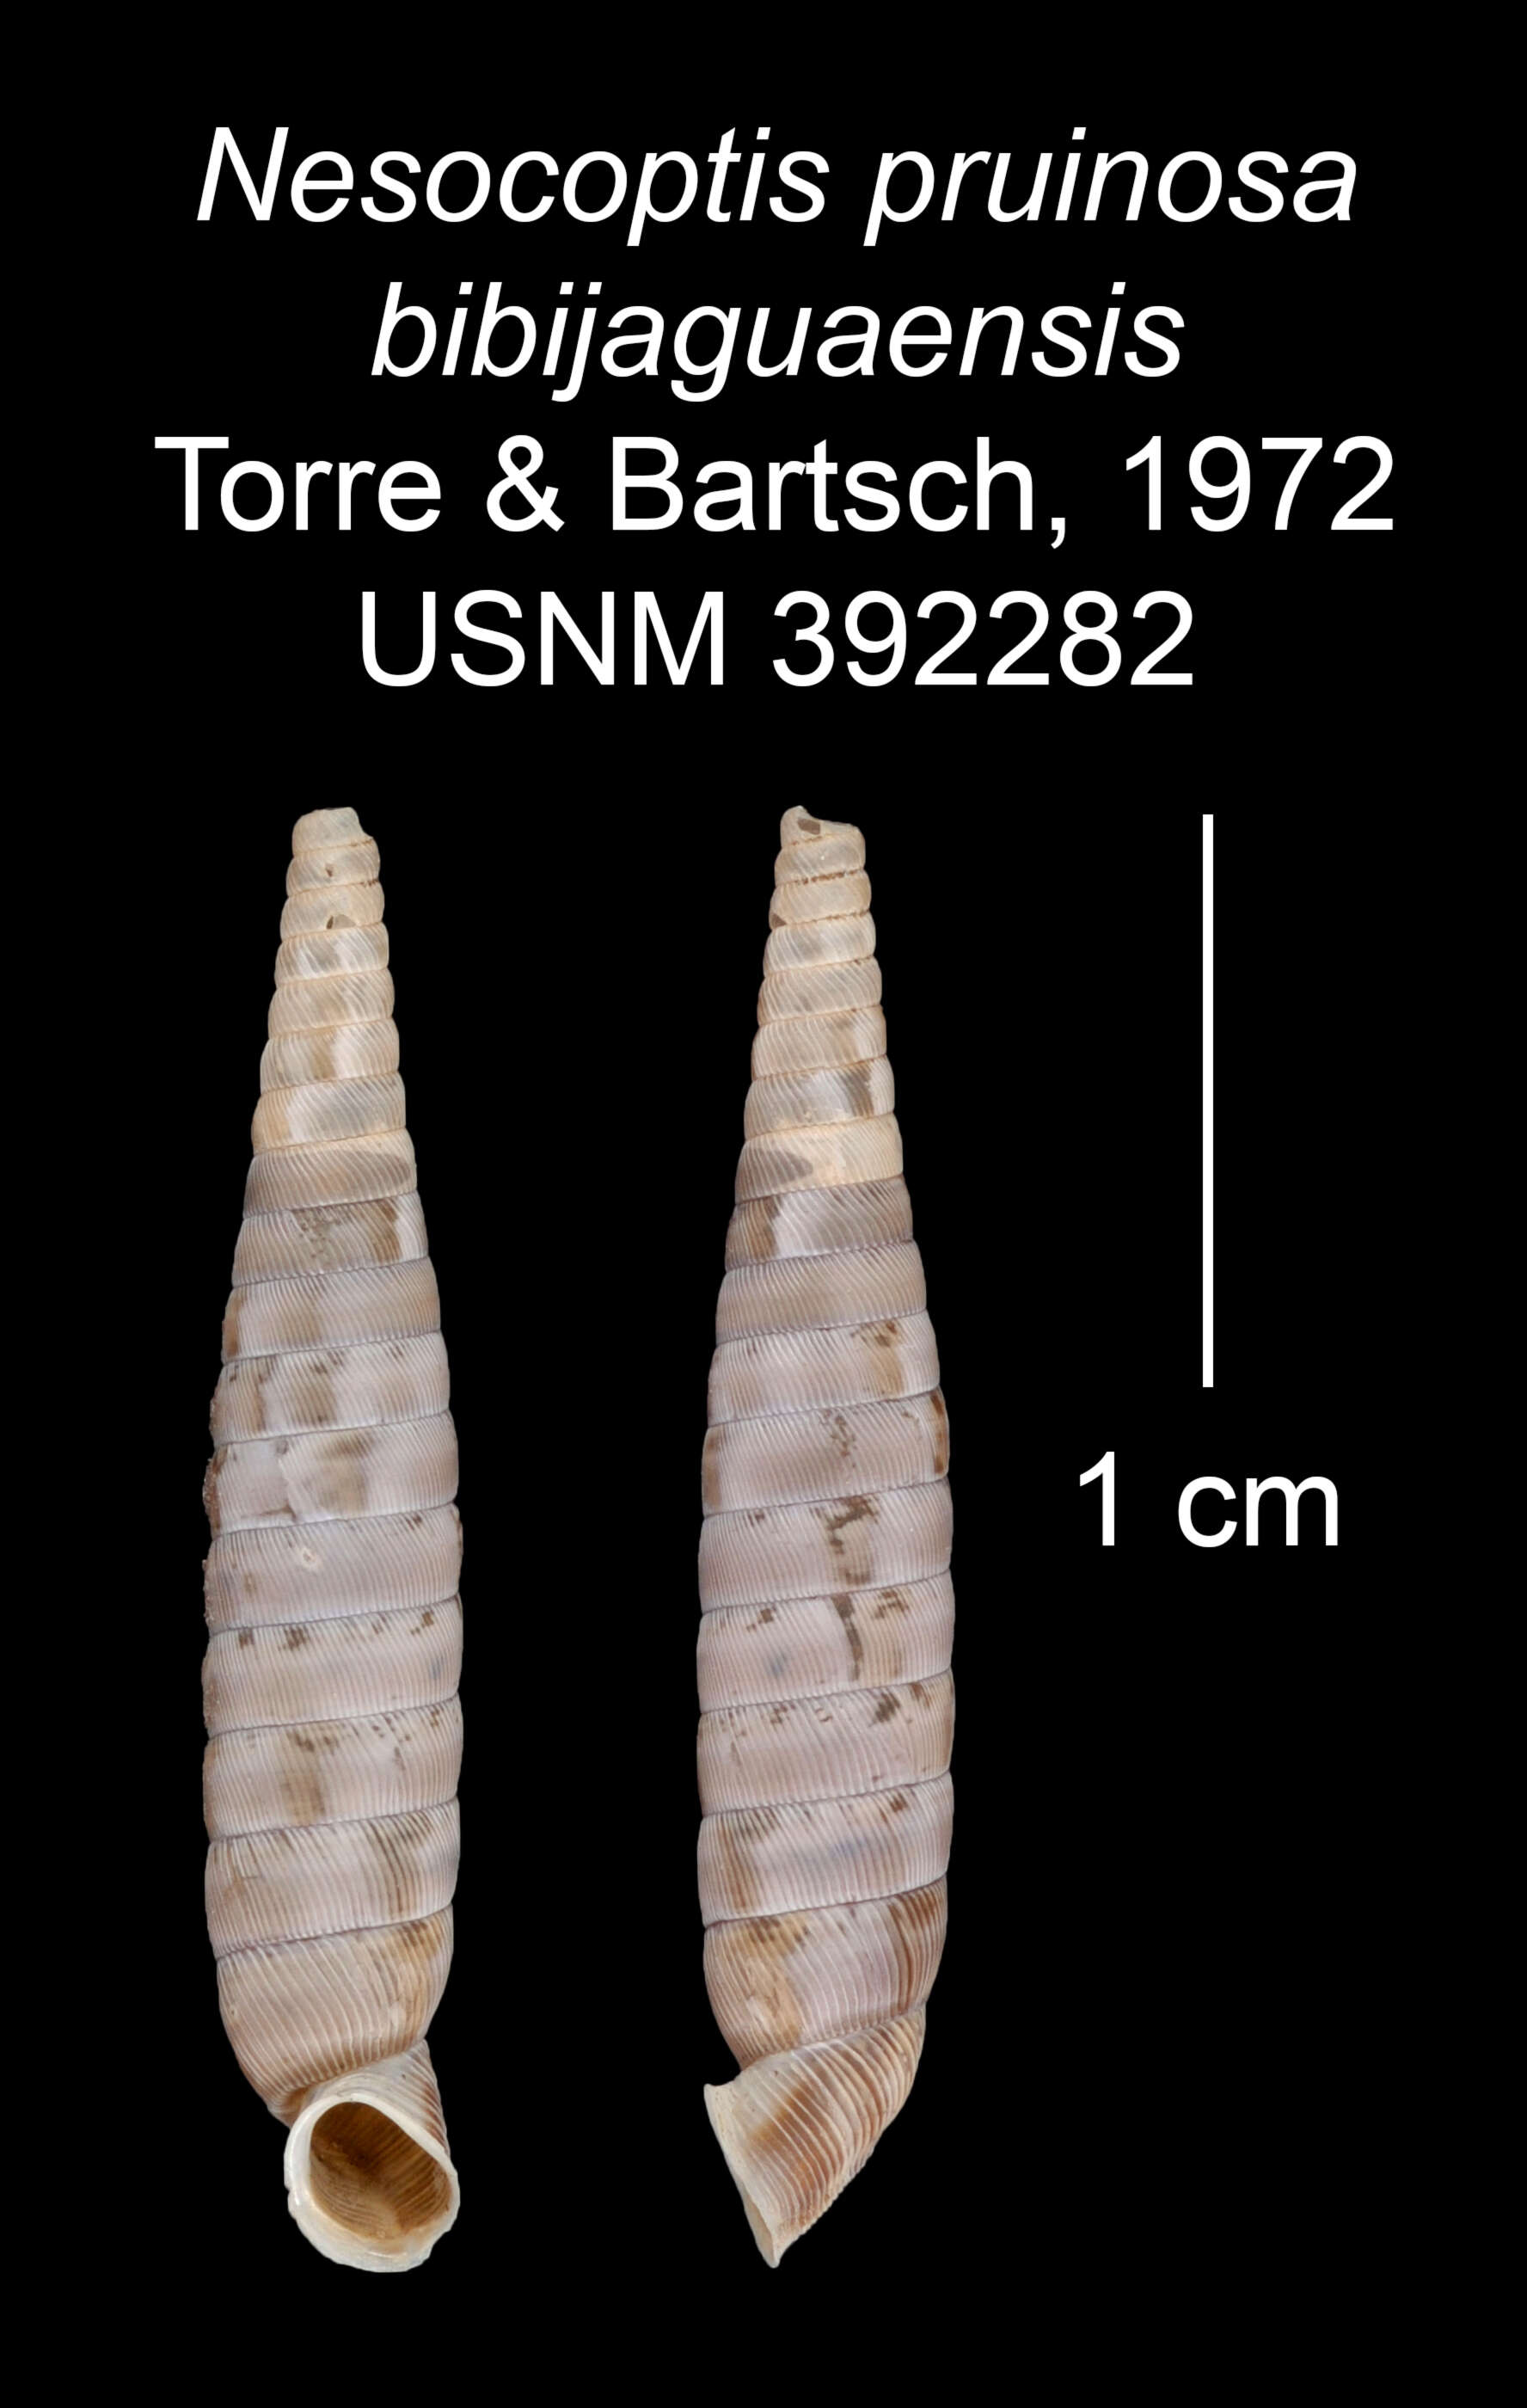 Image of Nesocoptis pruinosa bibijaguasensis C. Torre & Bartsch 1972